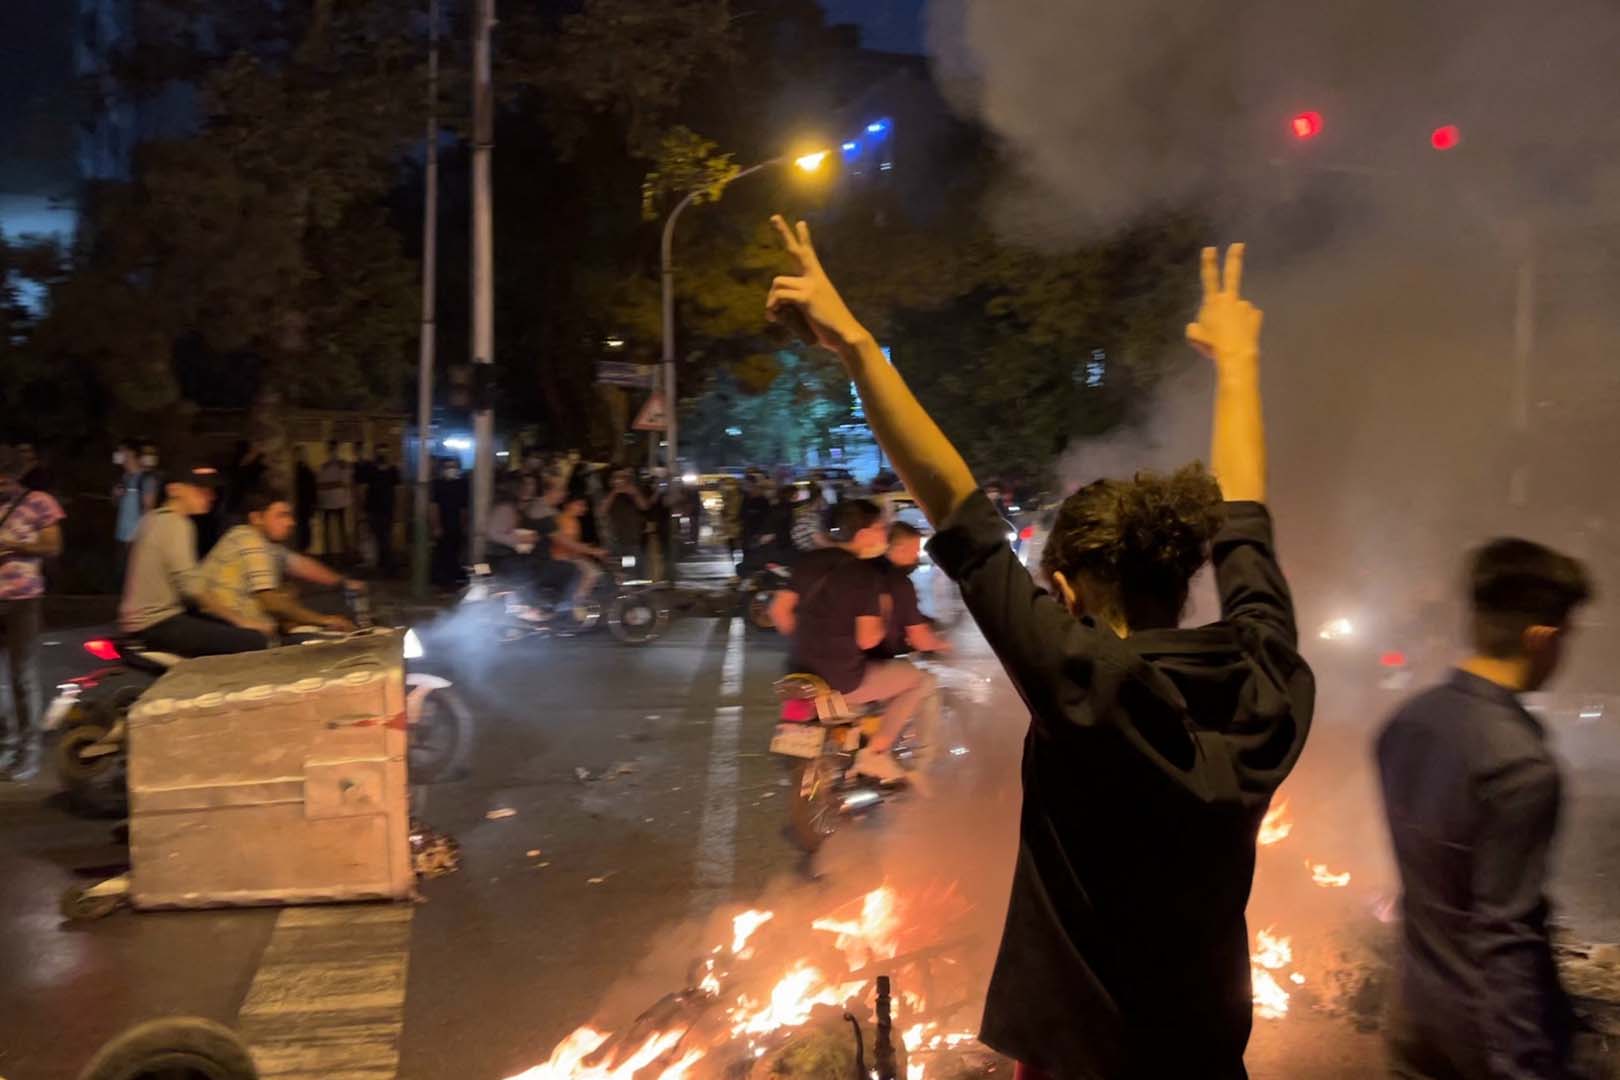 İran'da ortalık karışıyor! Protestocular Mahsa Amini'yi destek için eşarplarını ateşe attı!